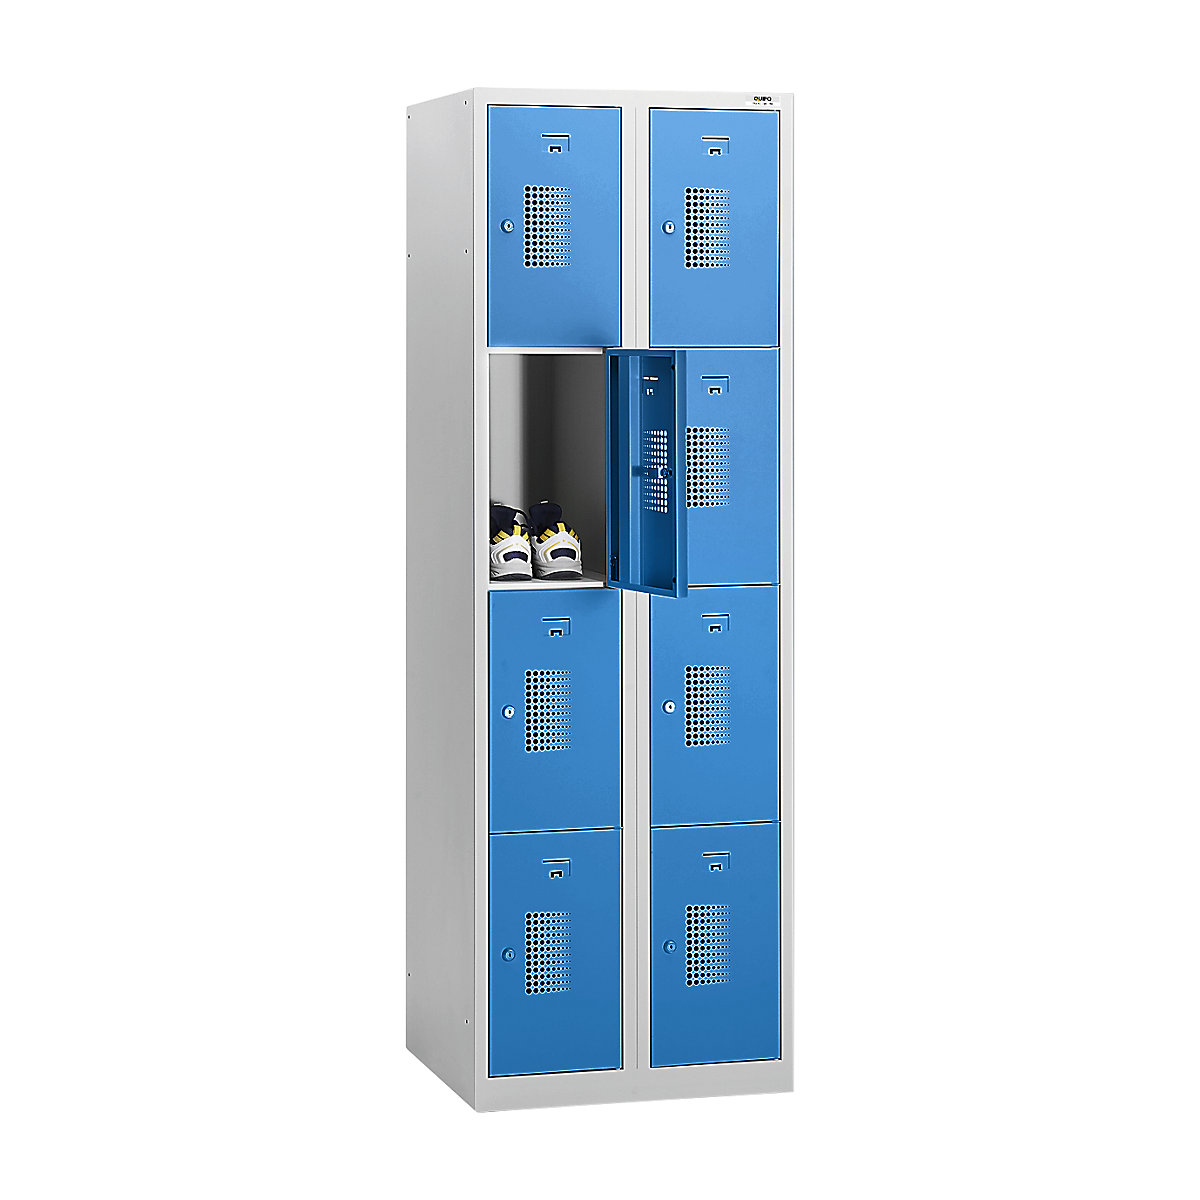 Omara s predelki z zaklepanjem AMSTERDAM – eurokraft basic, 2 razdelka, širina 800 mm, 8 predelkov, cilindrična ključavnica, korpus svetlo siv, vrata svetlo modra-19